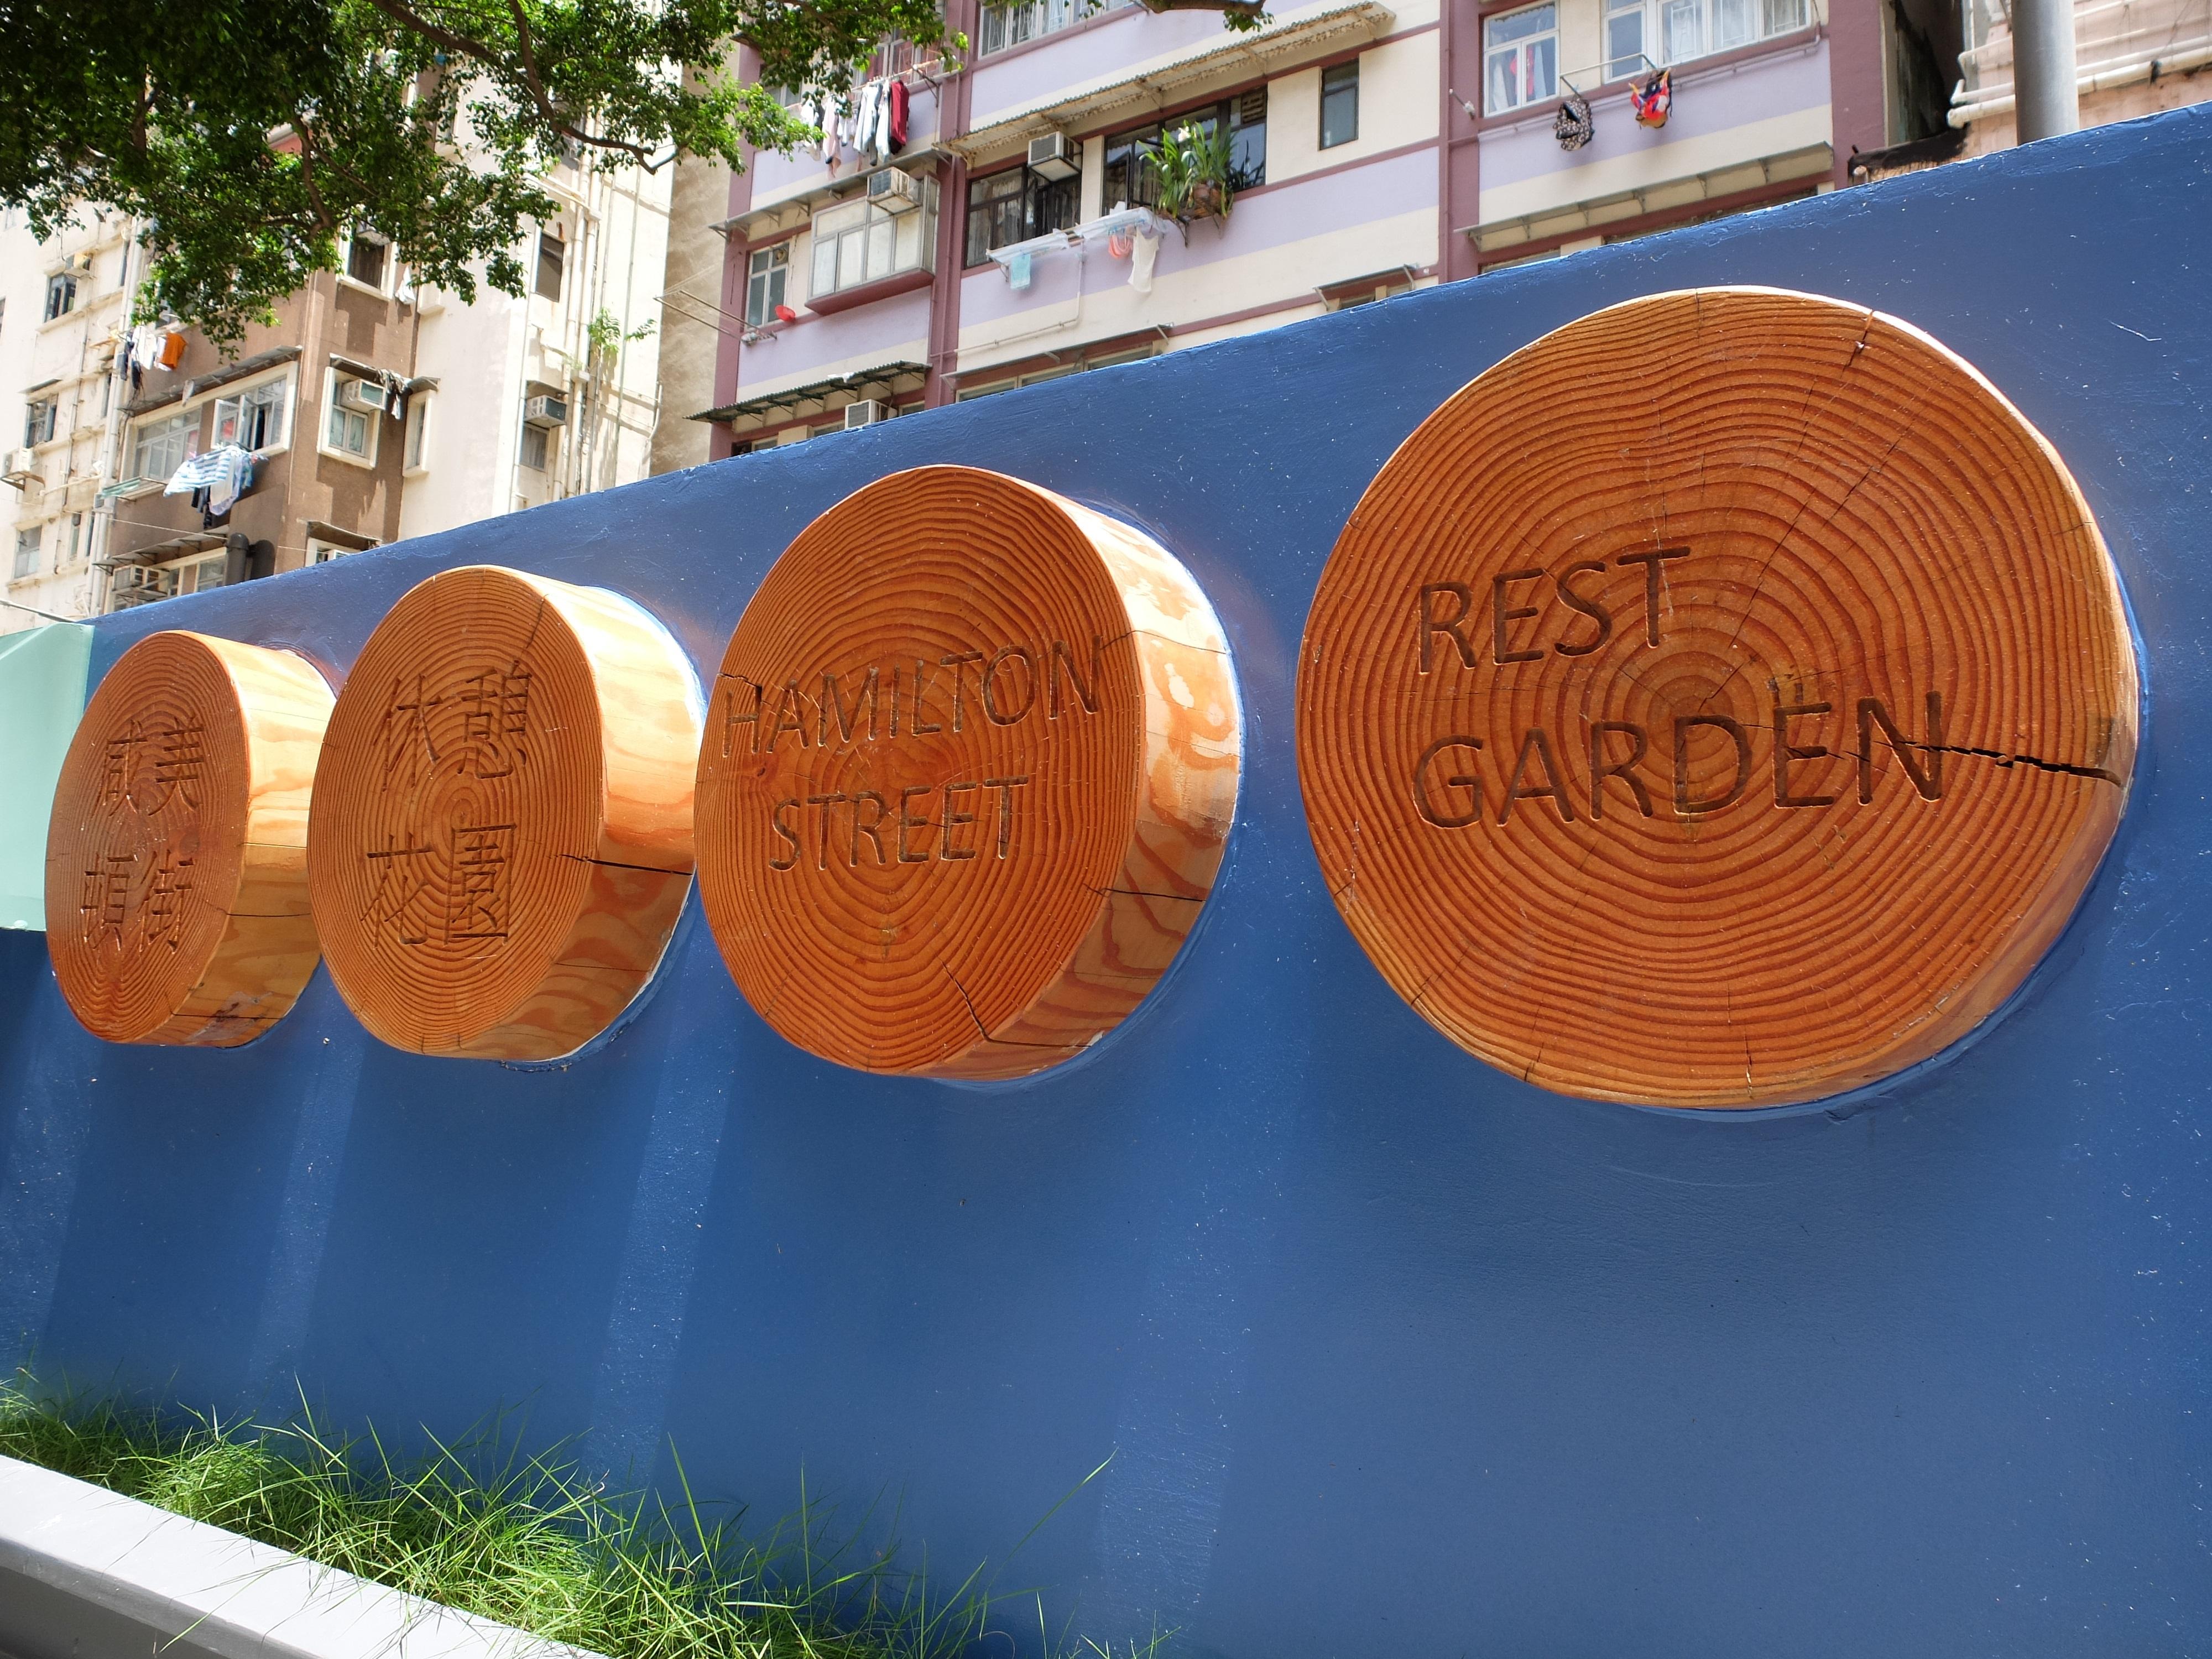 油尖旺区咸美顿街休憩花园已完成翻新工程，明日（七月一日）起重新开放给公众使用，为区内居民和其他使用人士提供优质的公共休憩空间。